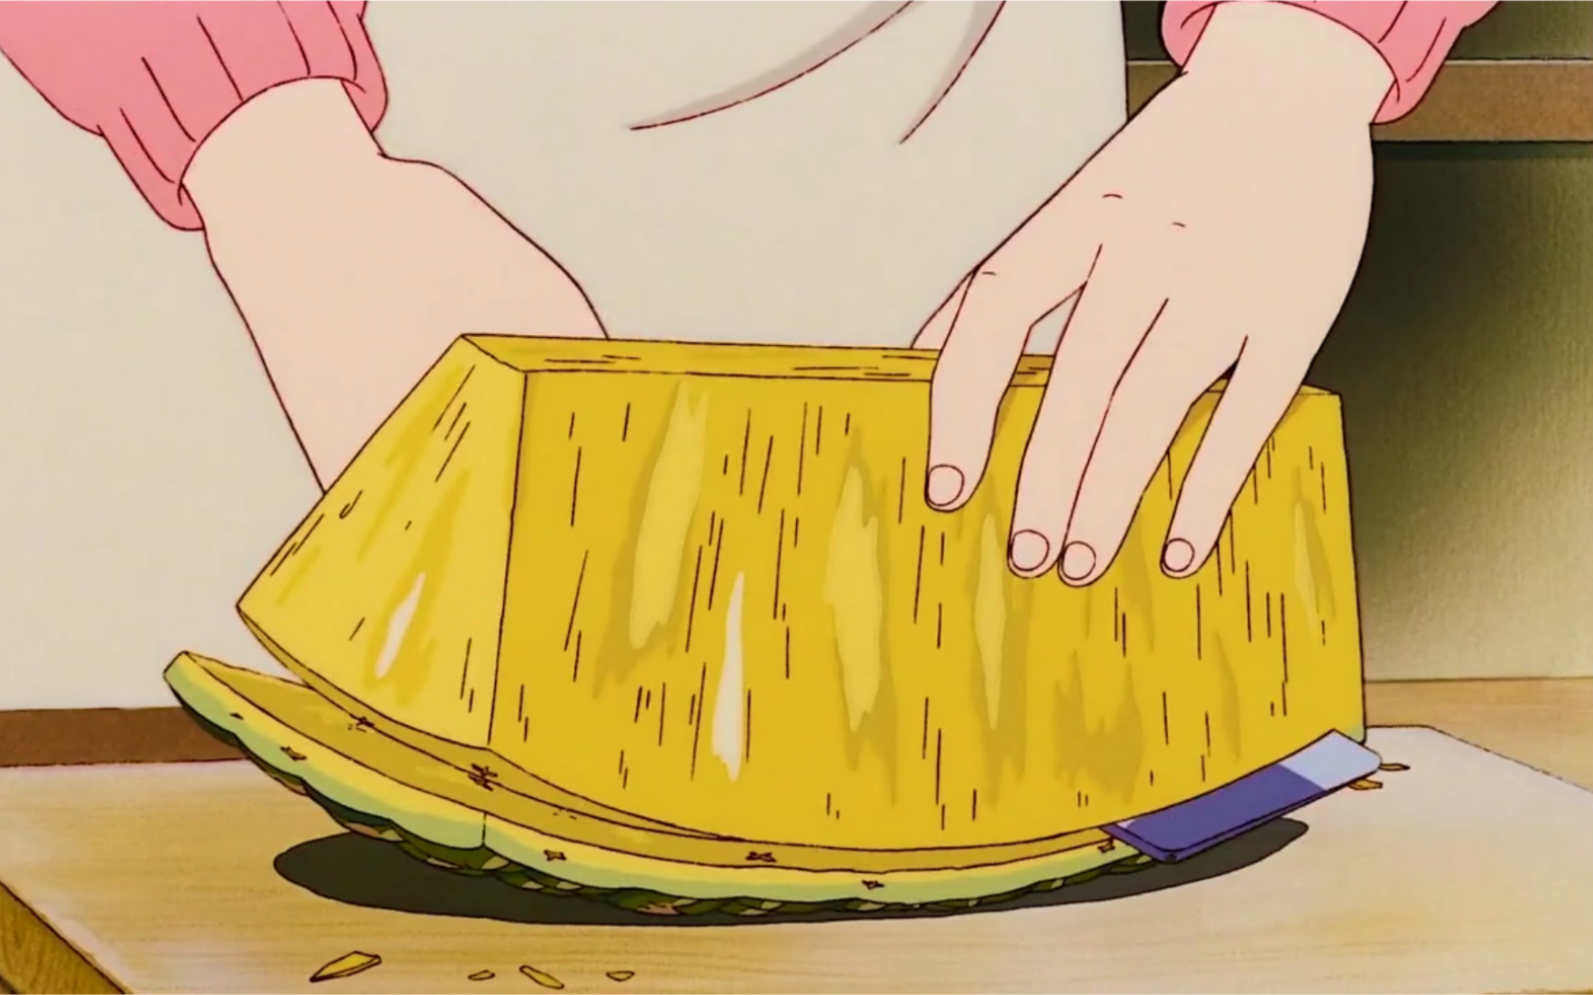 【深夜治愈】宫崎骏动画里的诱人美食,看完满满的幸福感